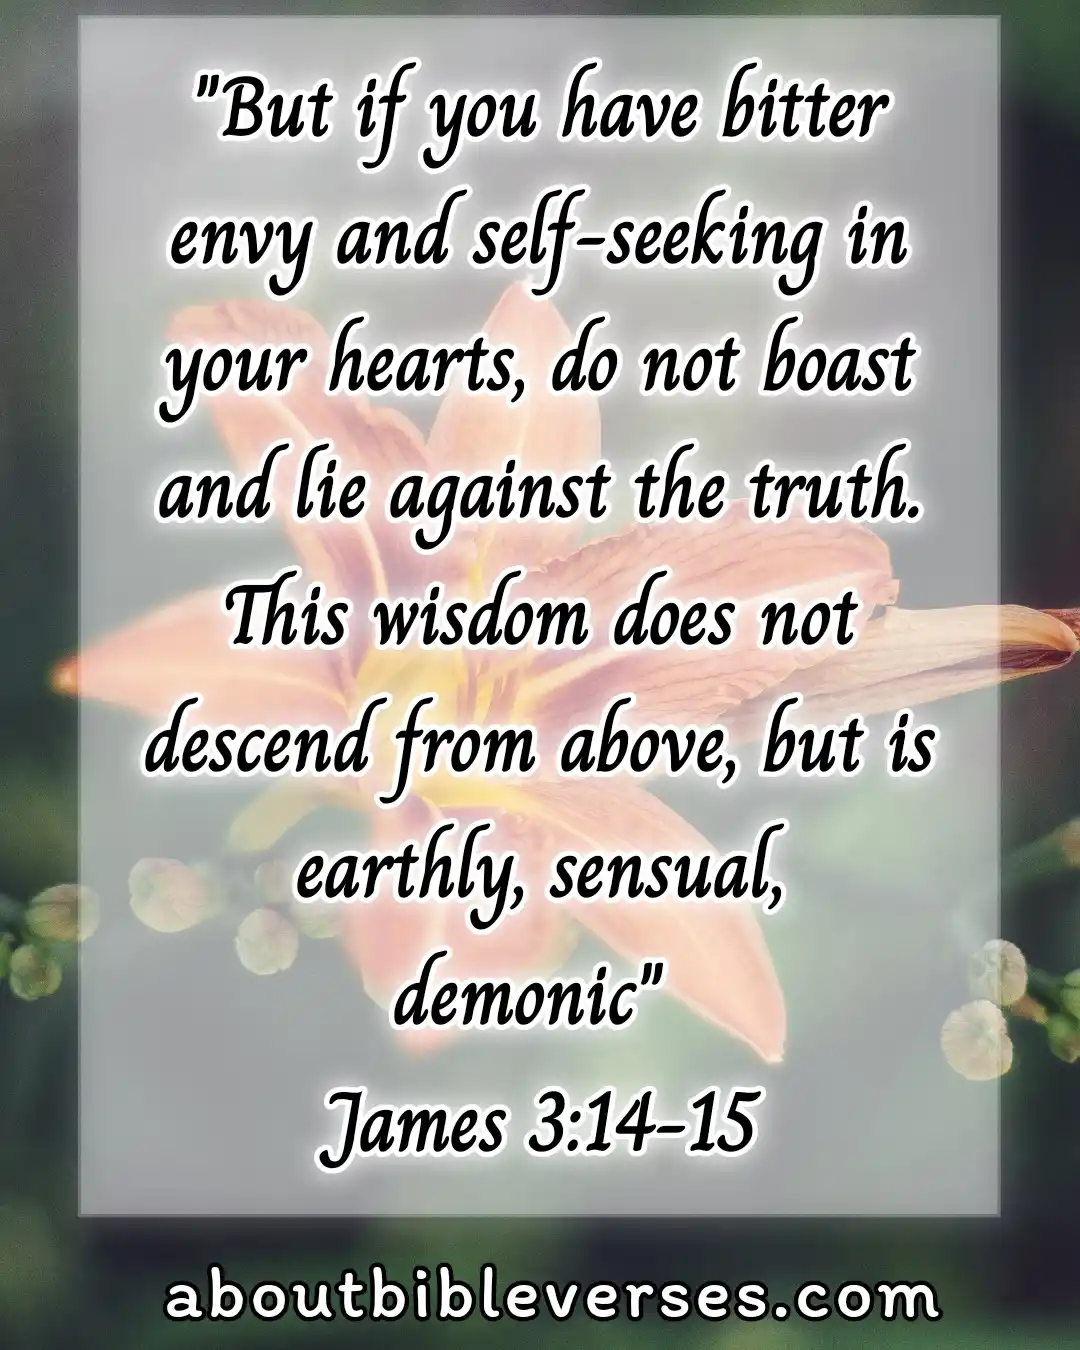 Today bible verse (James 3:14-15)